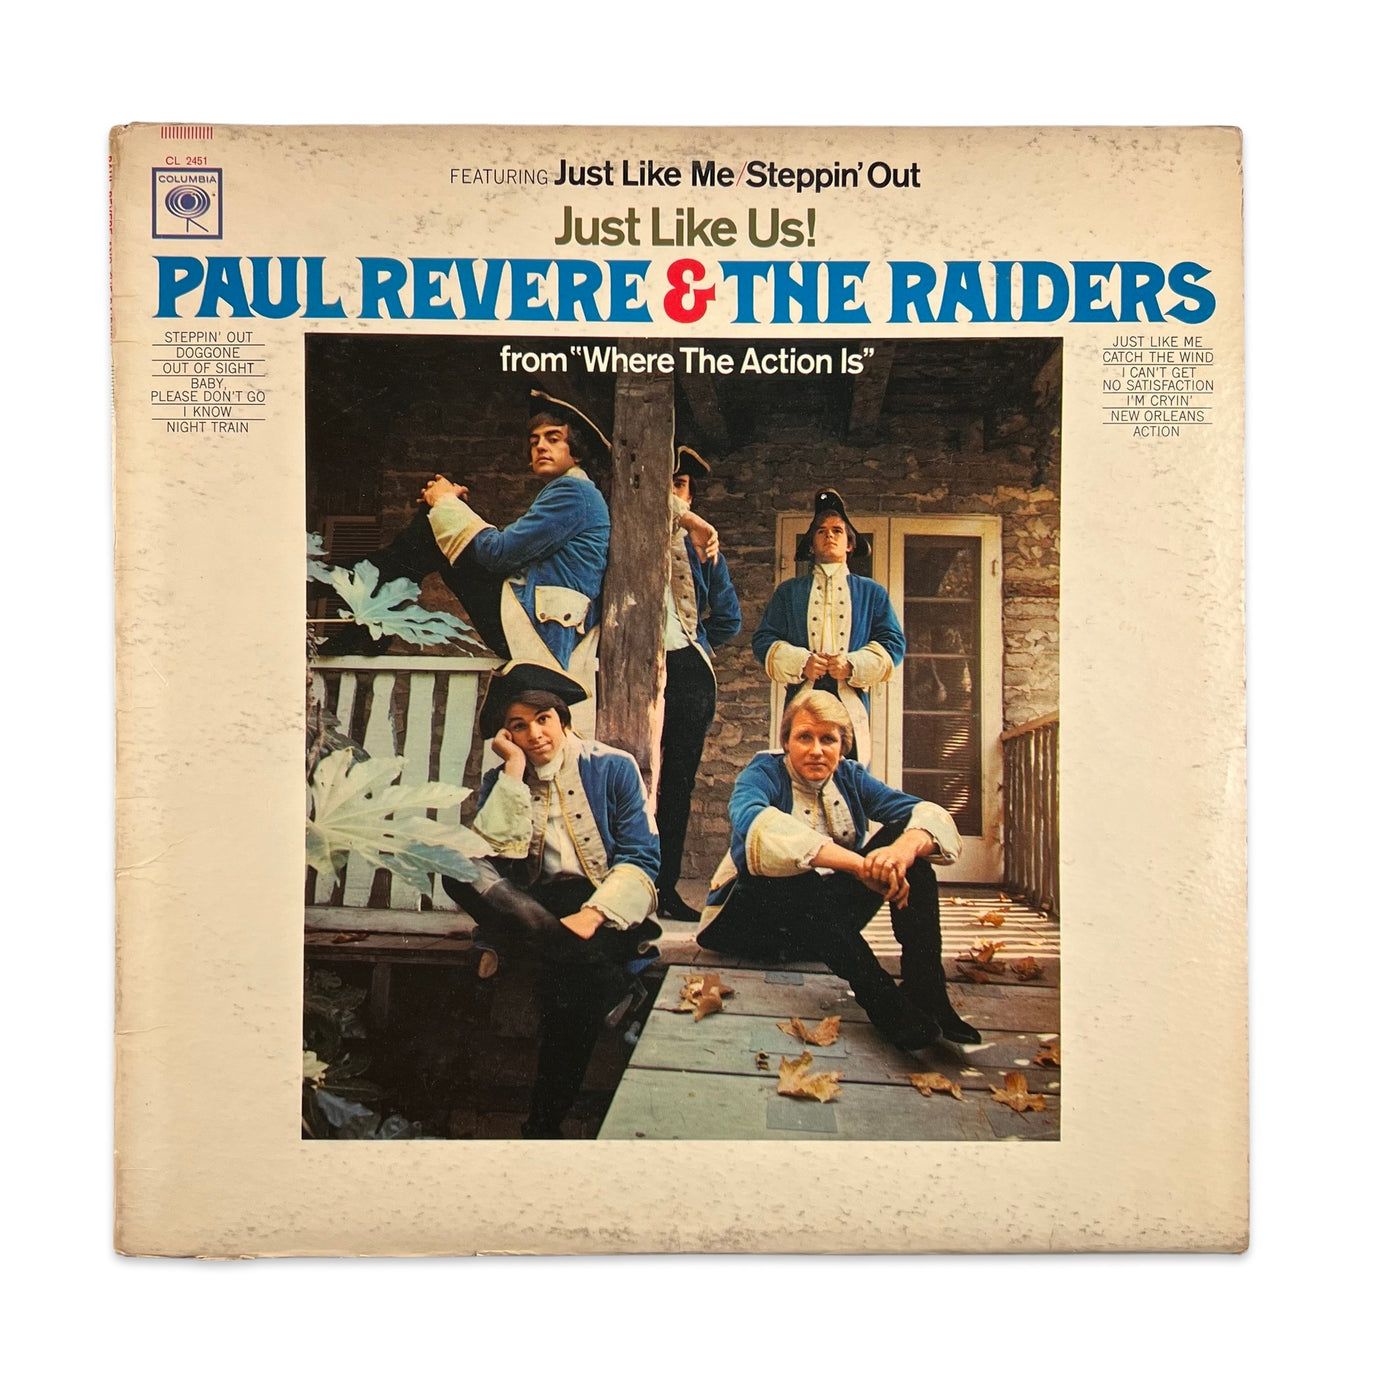 Paul Revere & The Raiders – Just Like Us!